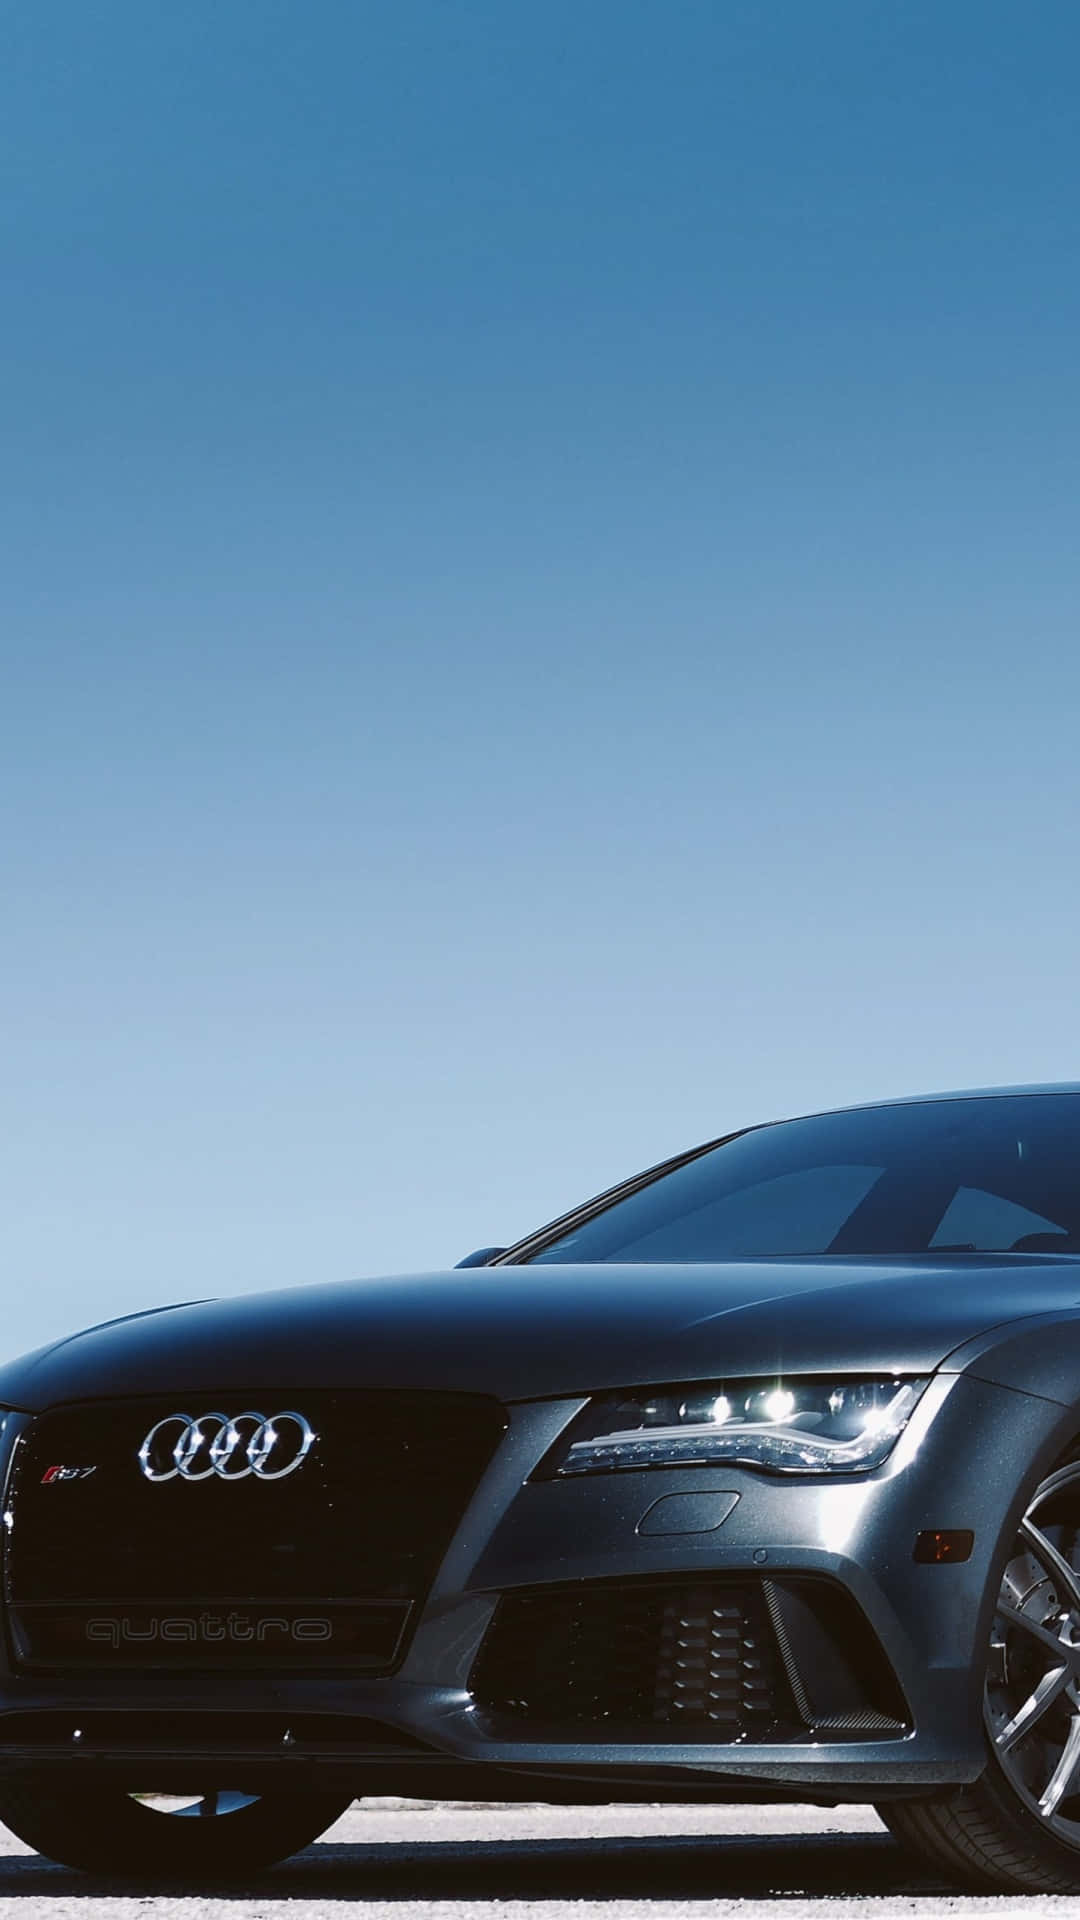 Sleek and Stylish Audi on Scenic Highway